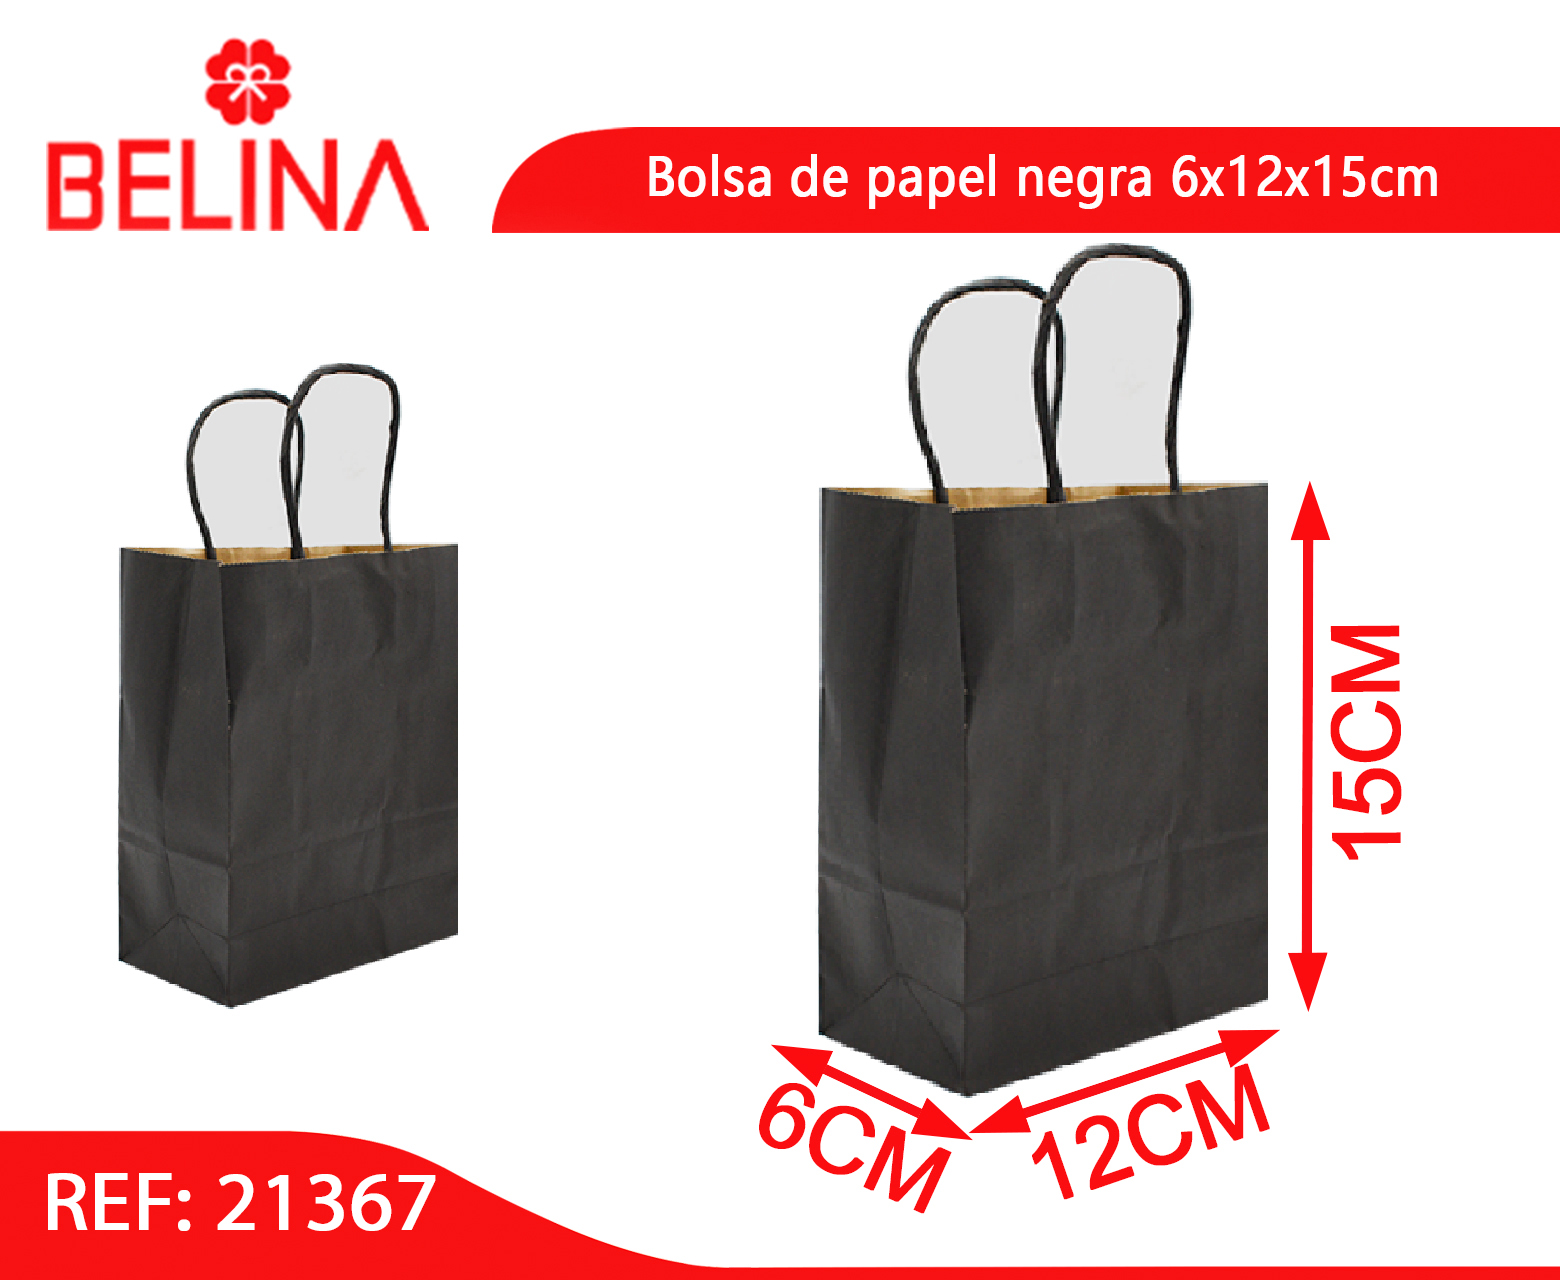 Bolsa de papel negra – Belina Cotillon